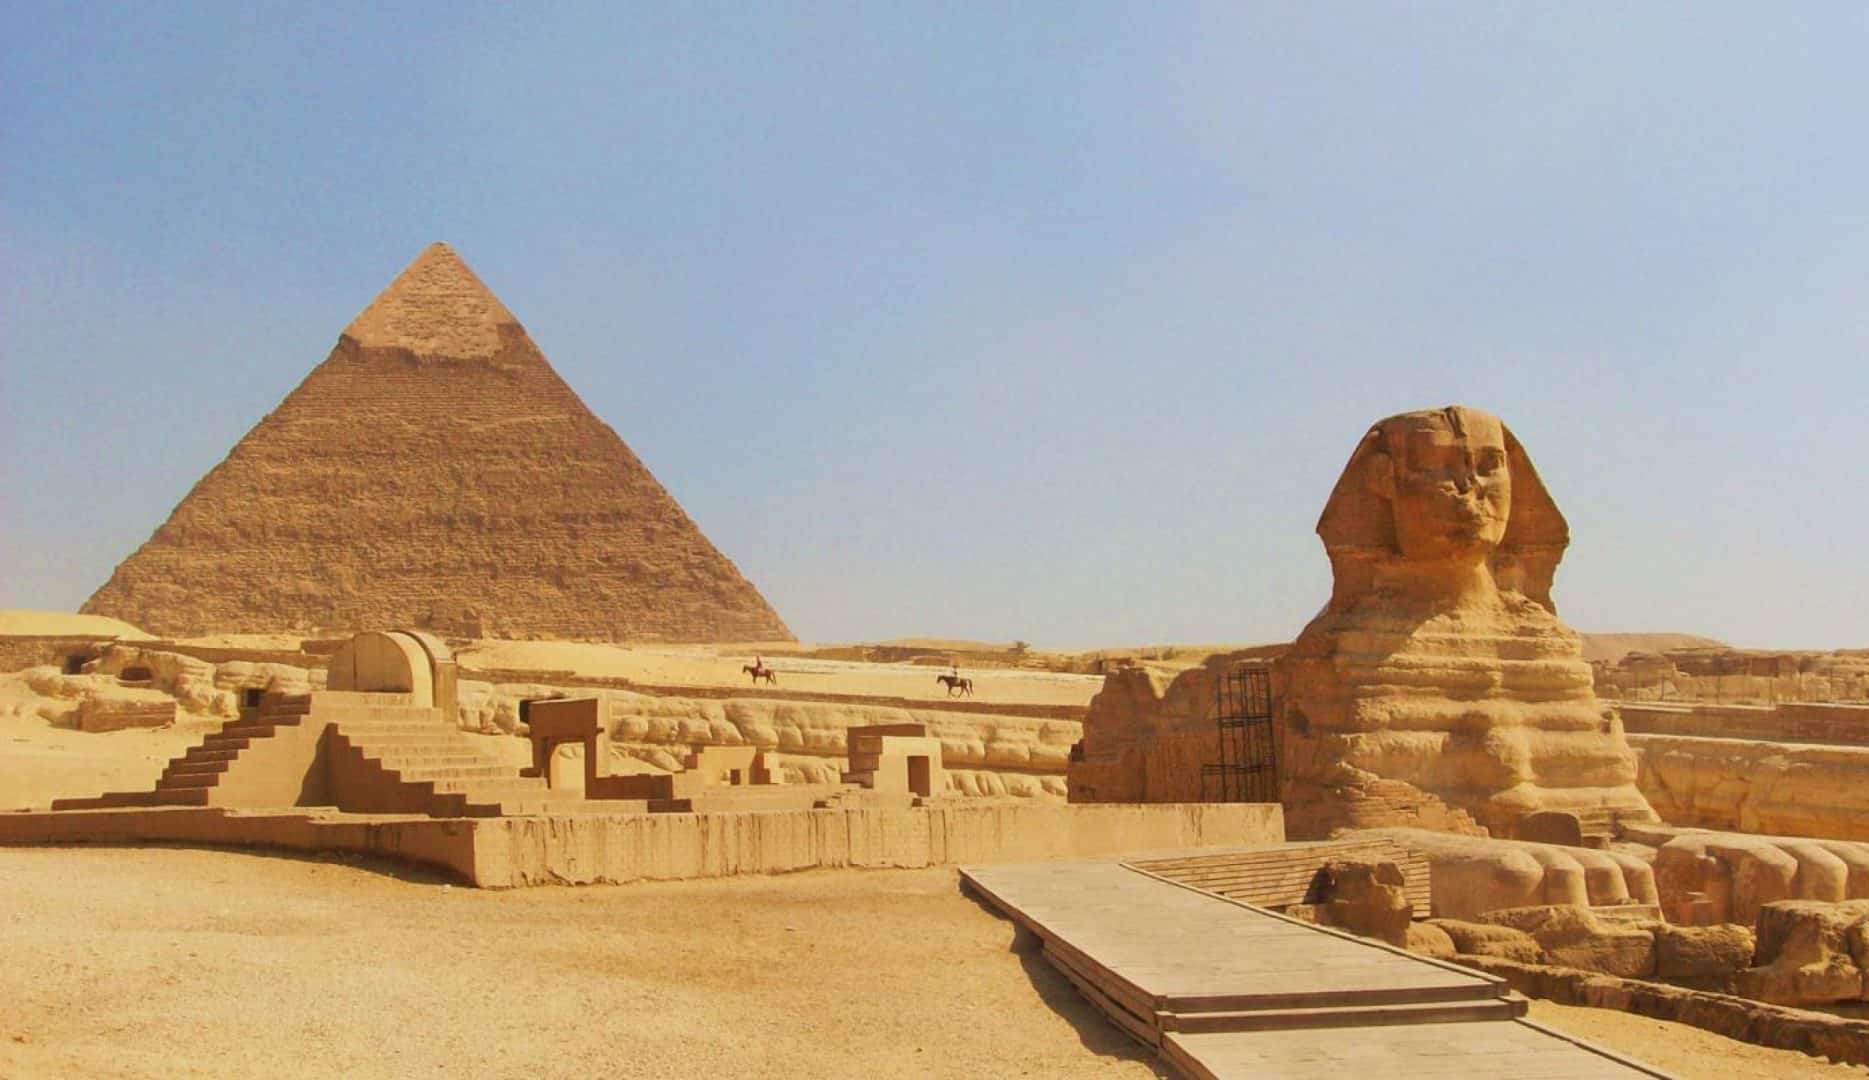 De pirâmides a palácio com jardins, atrações turísticas no Egito podem surpreender  Lorena Bueri